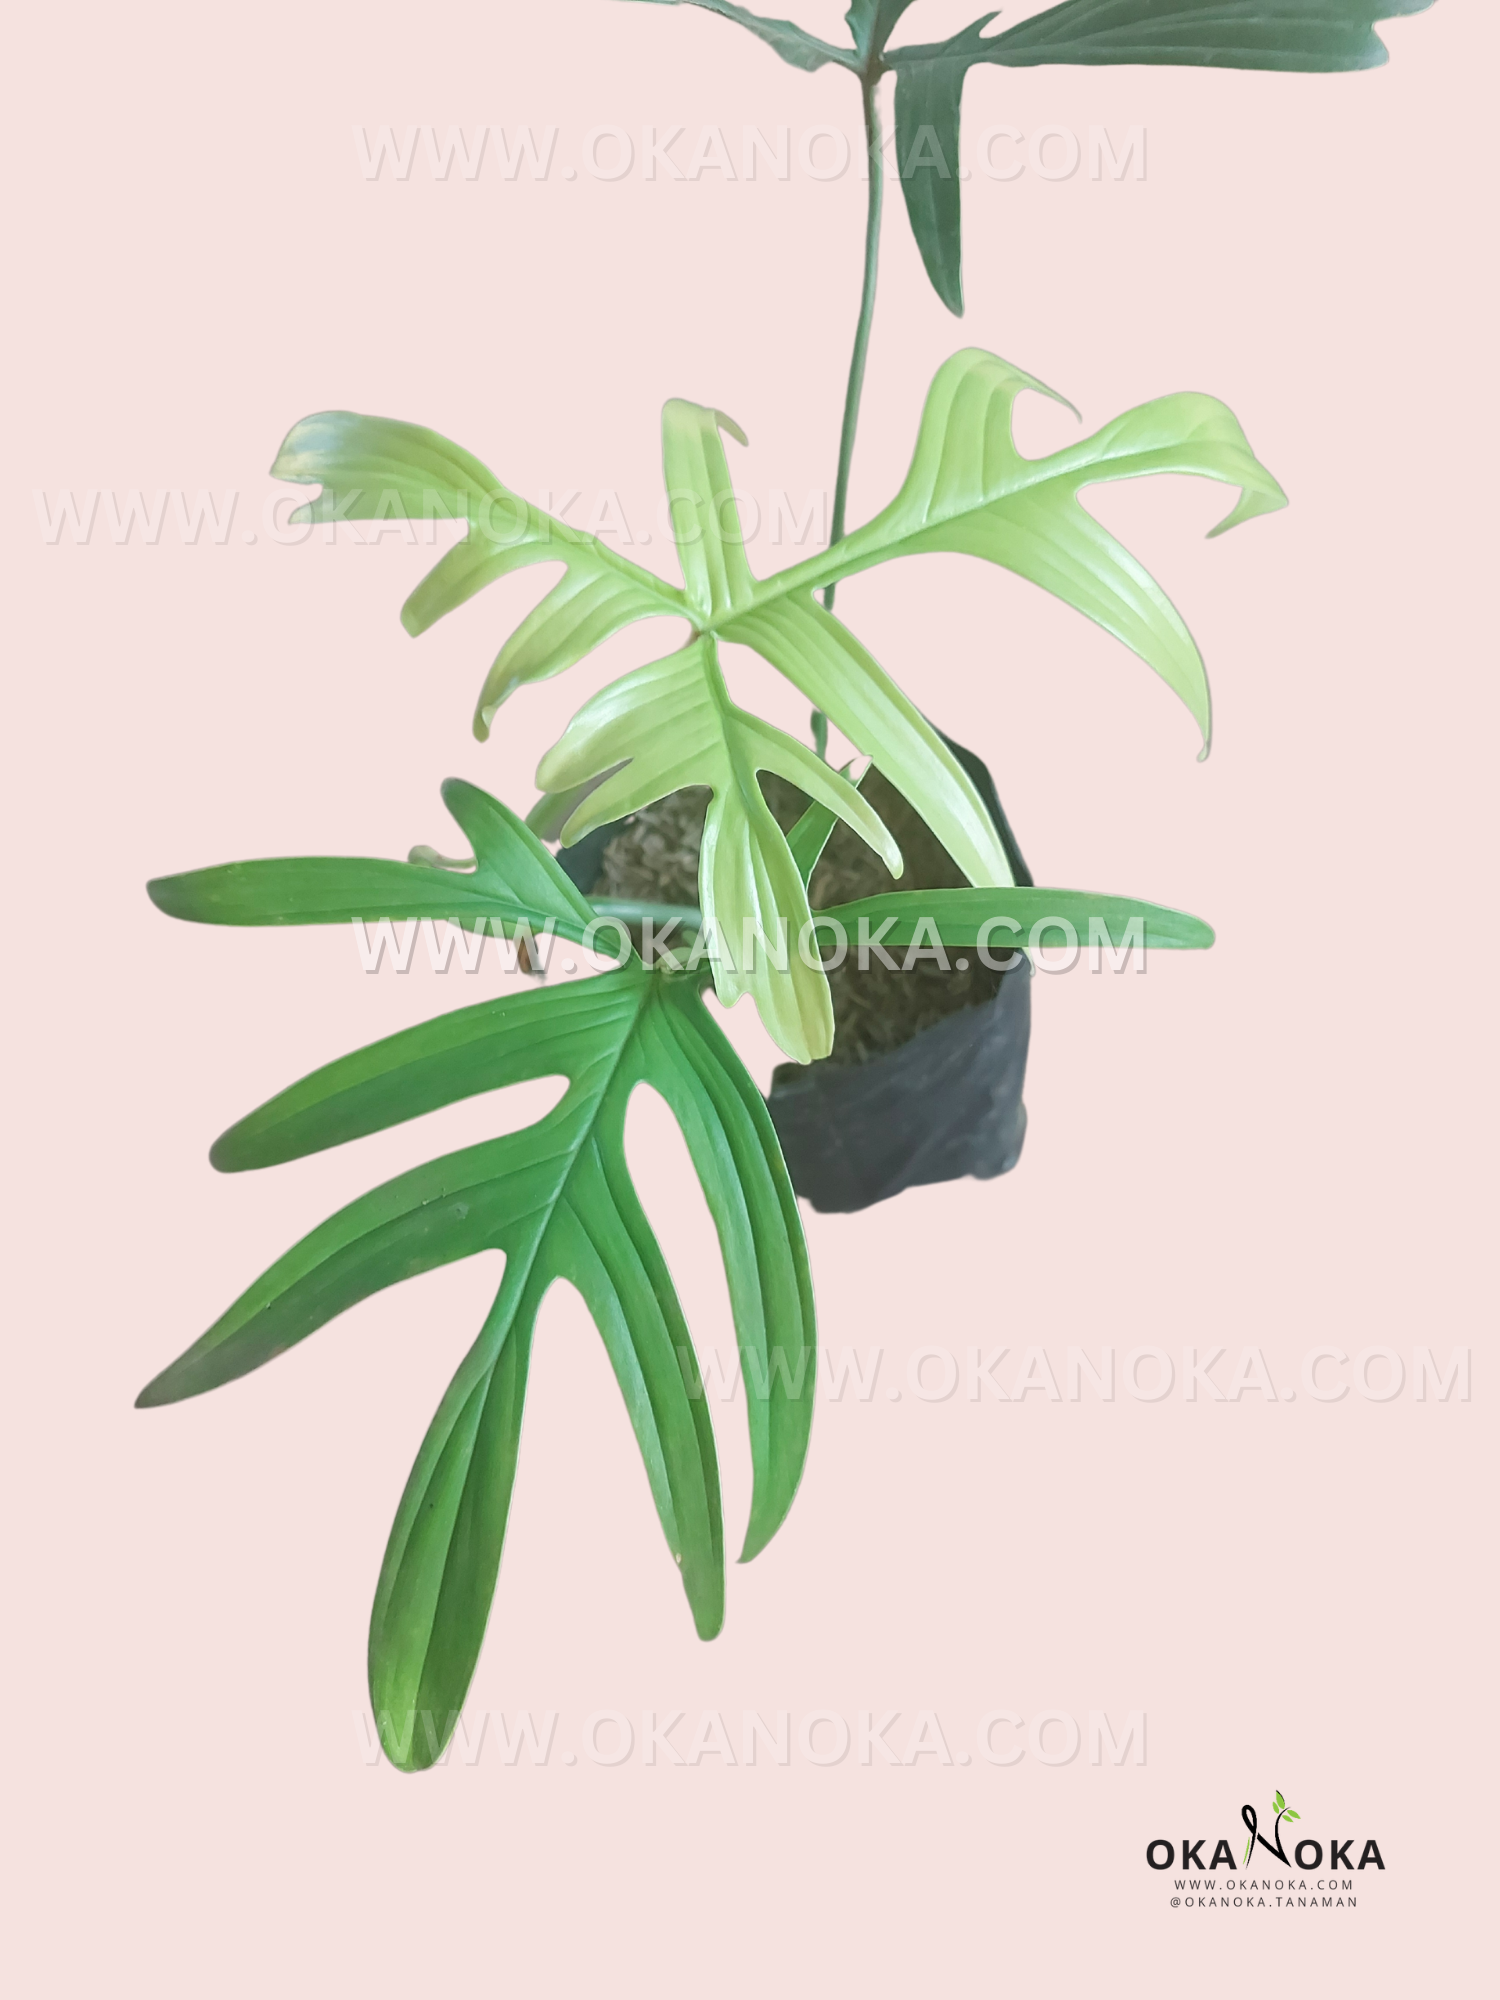 Philodendron Quercifolium